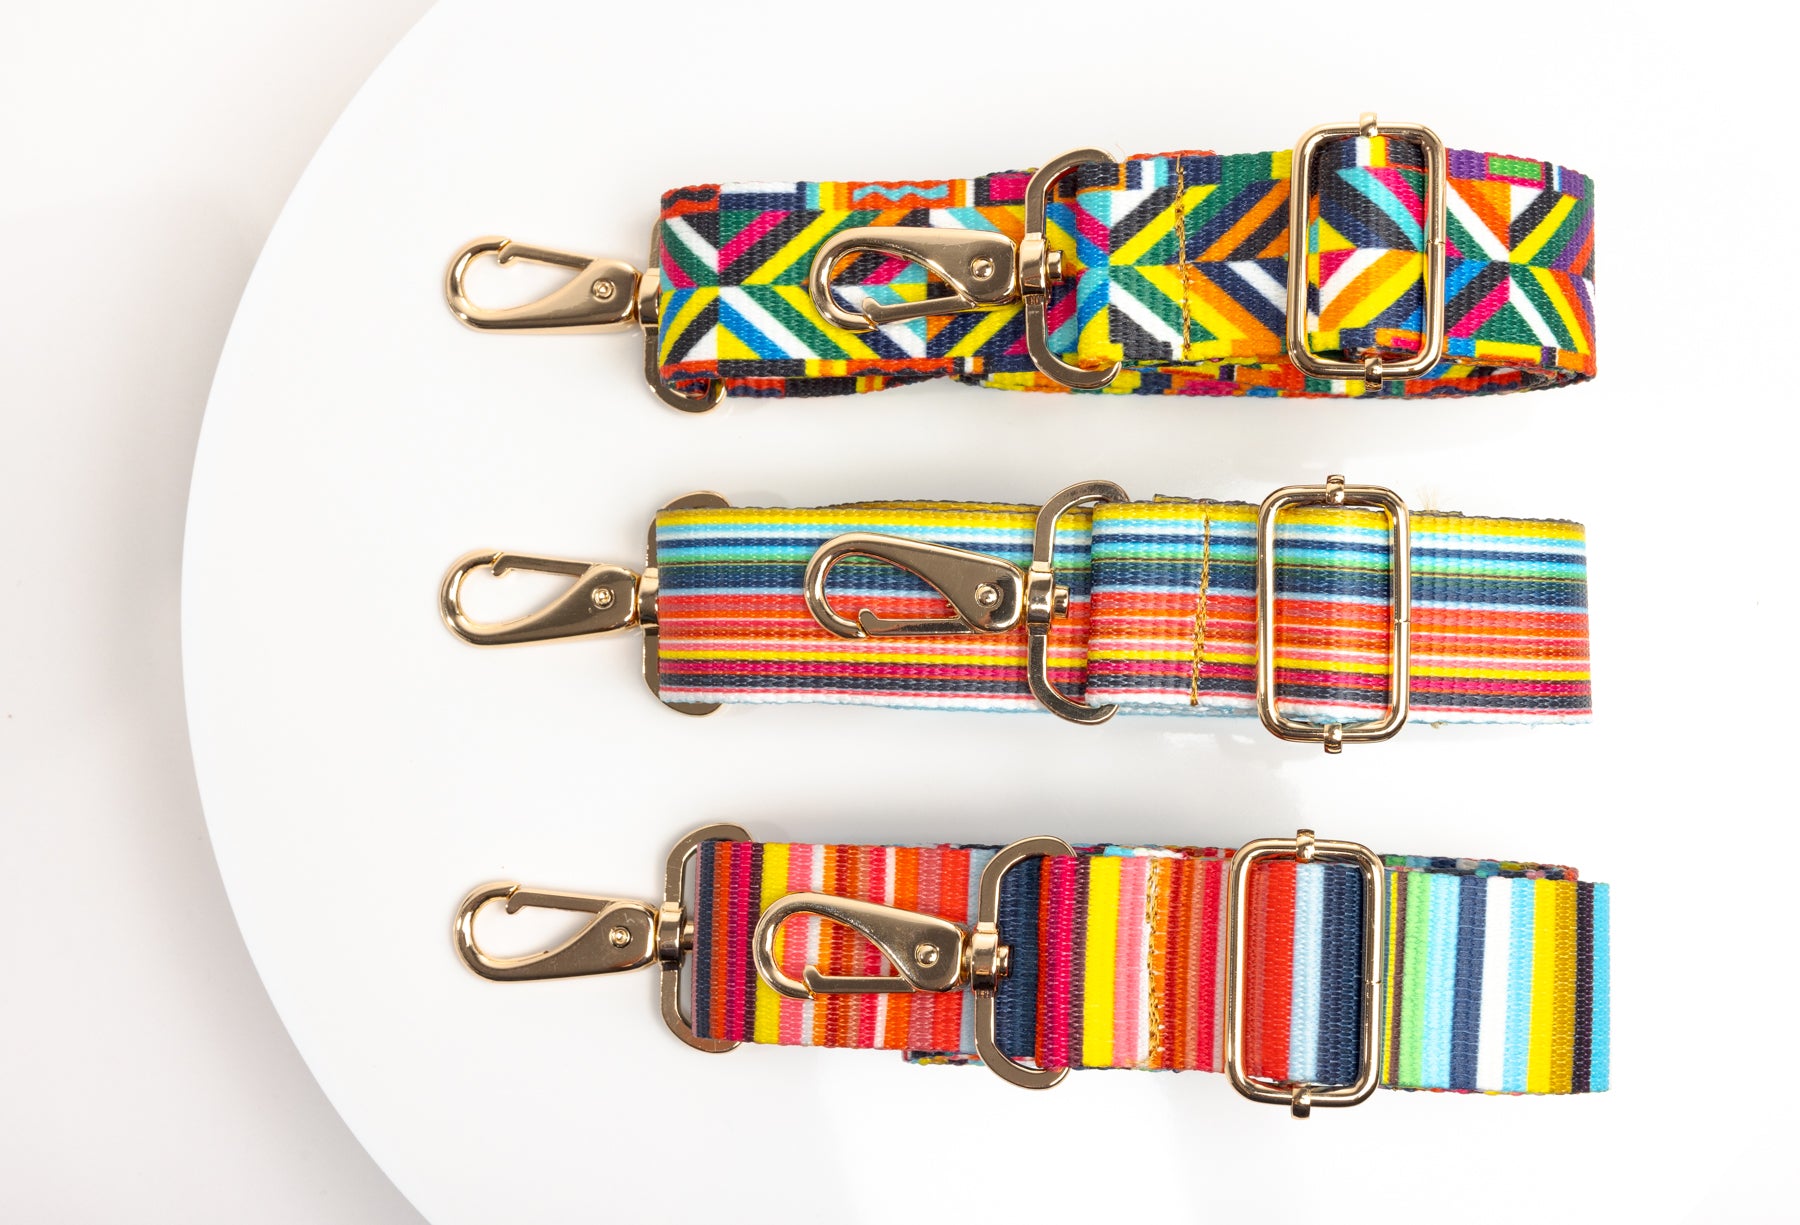 Coba multi color purse straps in a row